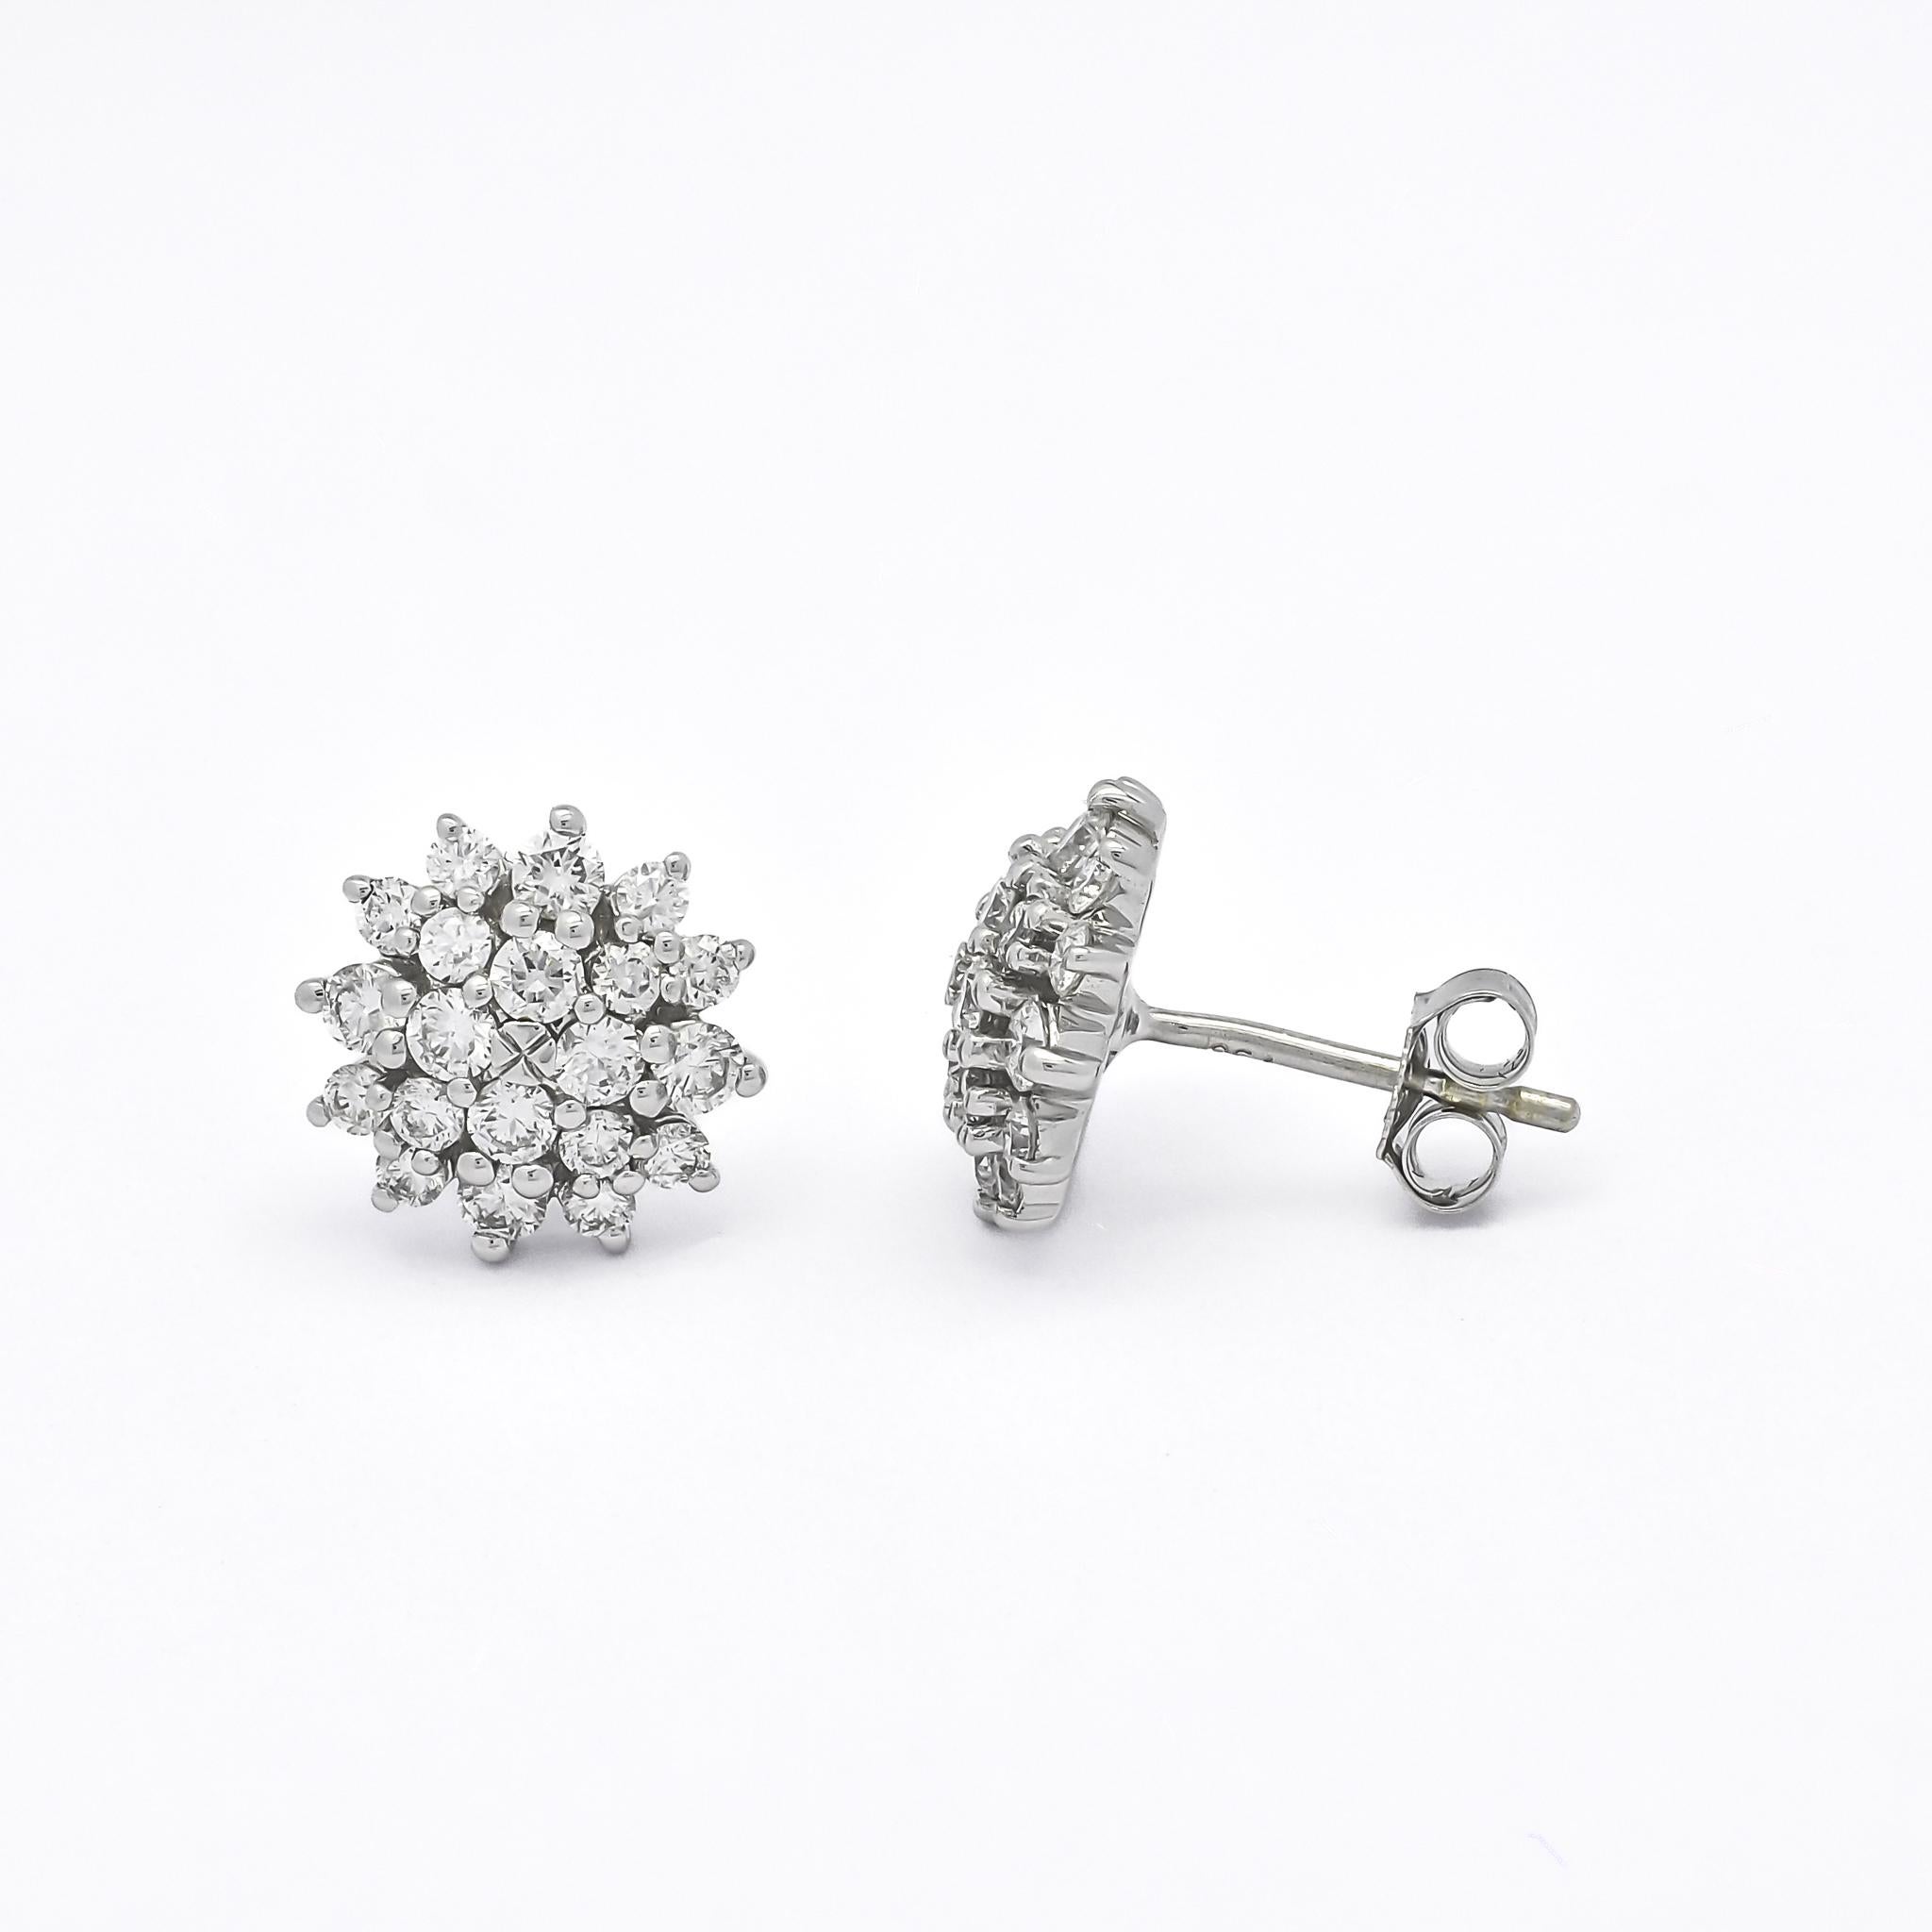 Voici nos superbes boucles d'oreilles à sertissage de diamants en forme de fleur, une combinaison parfaite de simplicité et d'élégance. Ces boucles d'oreilles en diamant naturel en or blanc 18 carats présentent une grappe de diamants dans une